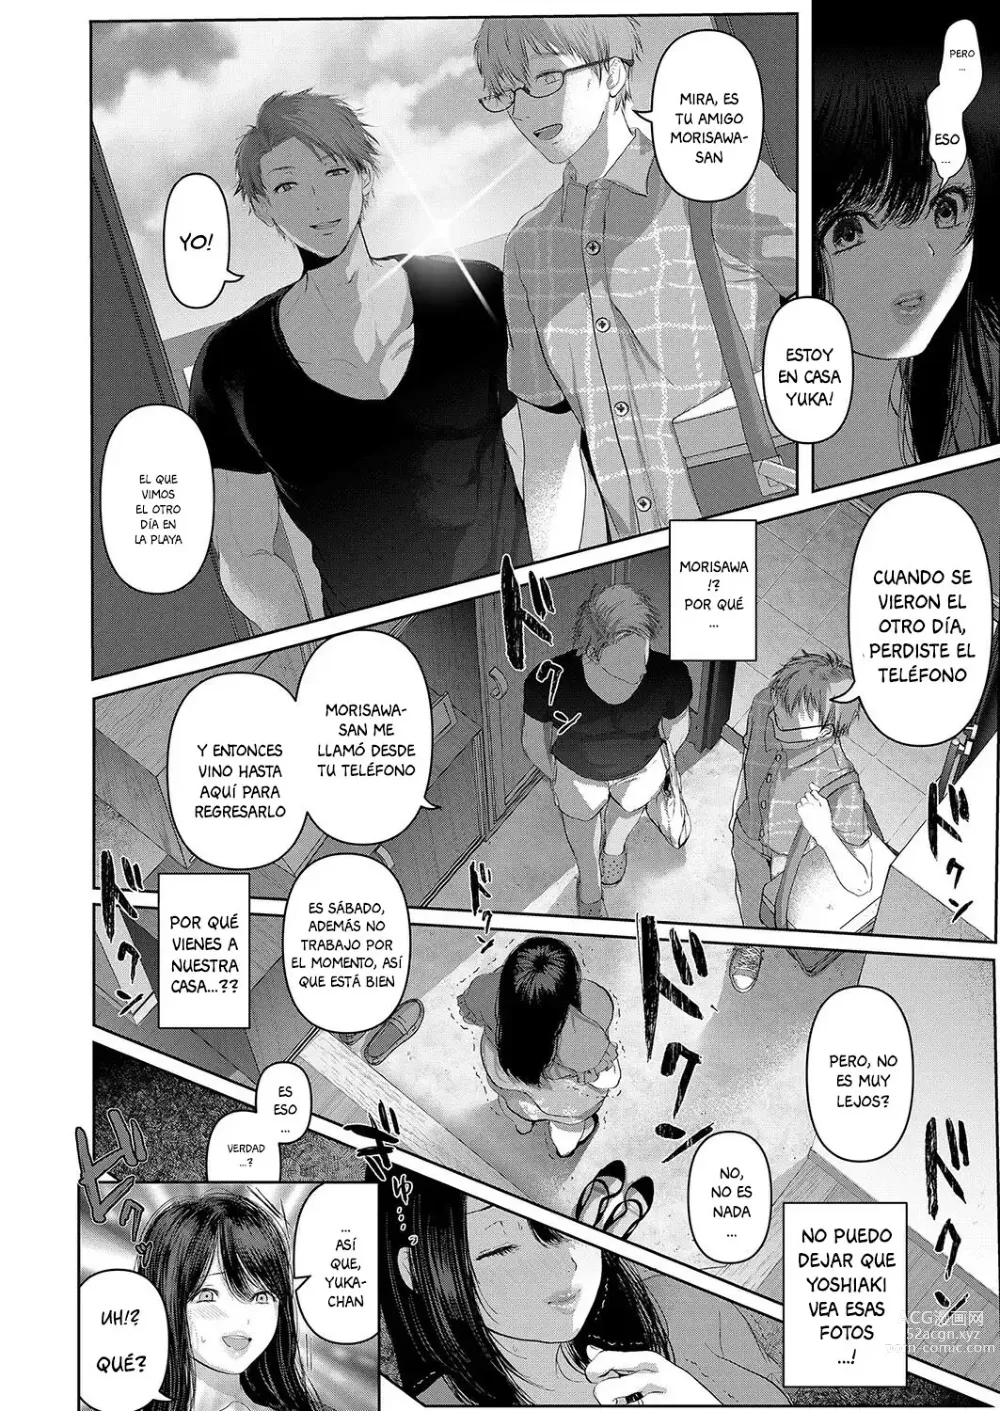 Page 6 of manga Manatsu - Nettaiya